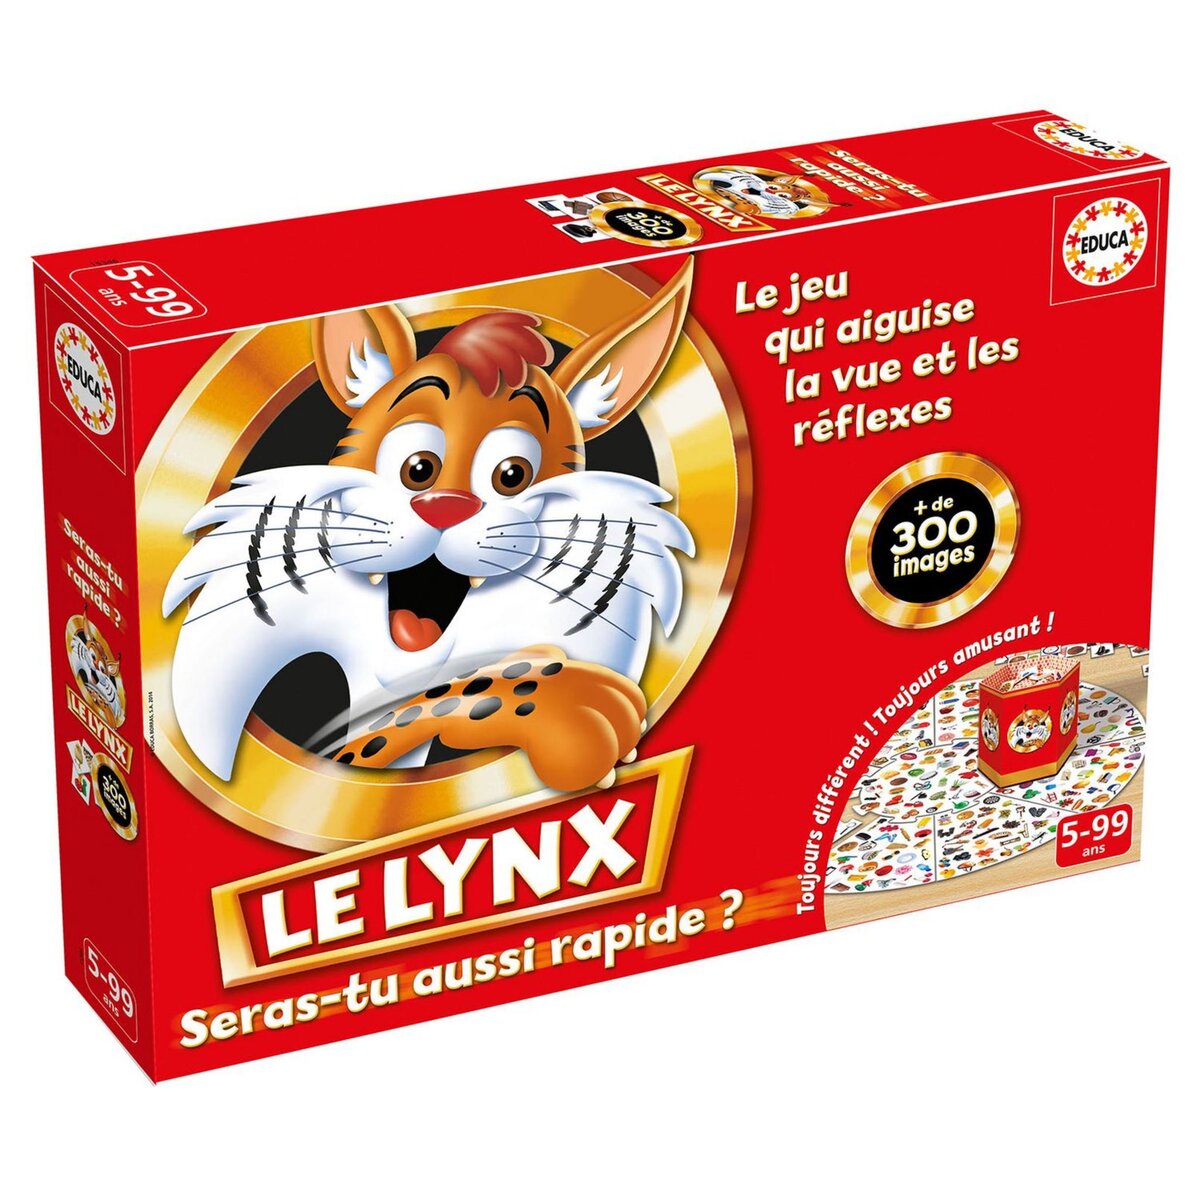 EDUCA Le Lynx 300 images pas cher 